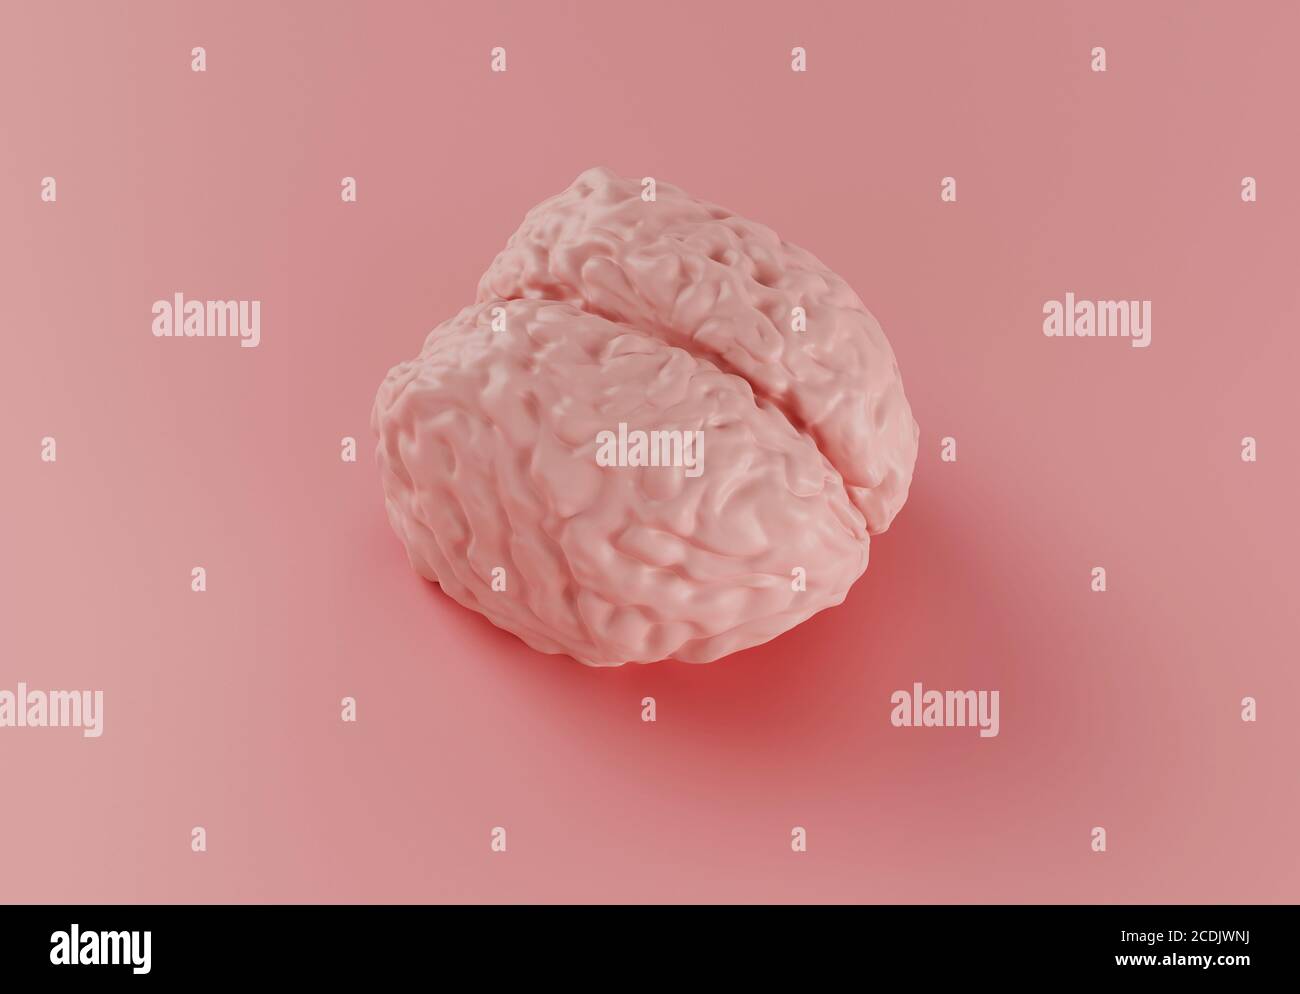 modello cerebrale rosa umano su sfondo rosa, concetto minimo, illustrazione 3d Foto Stock